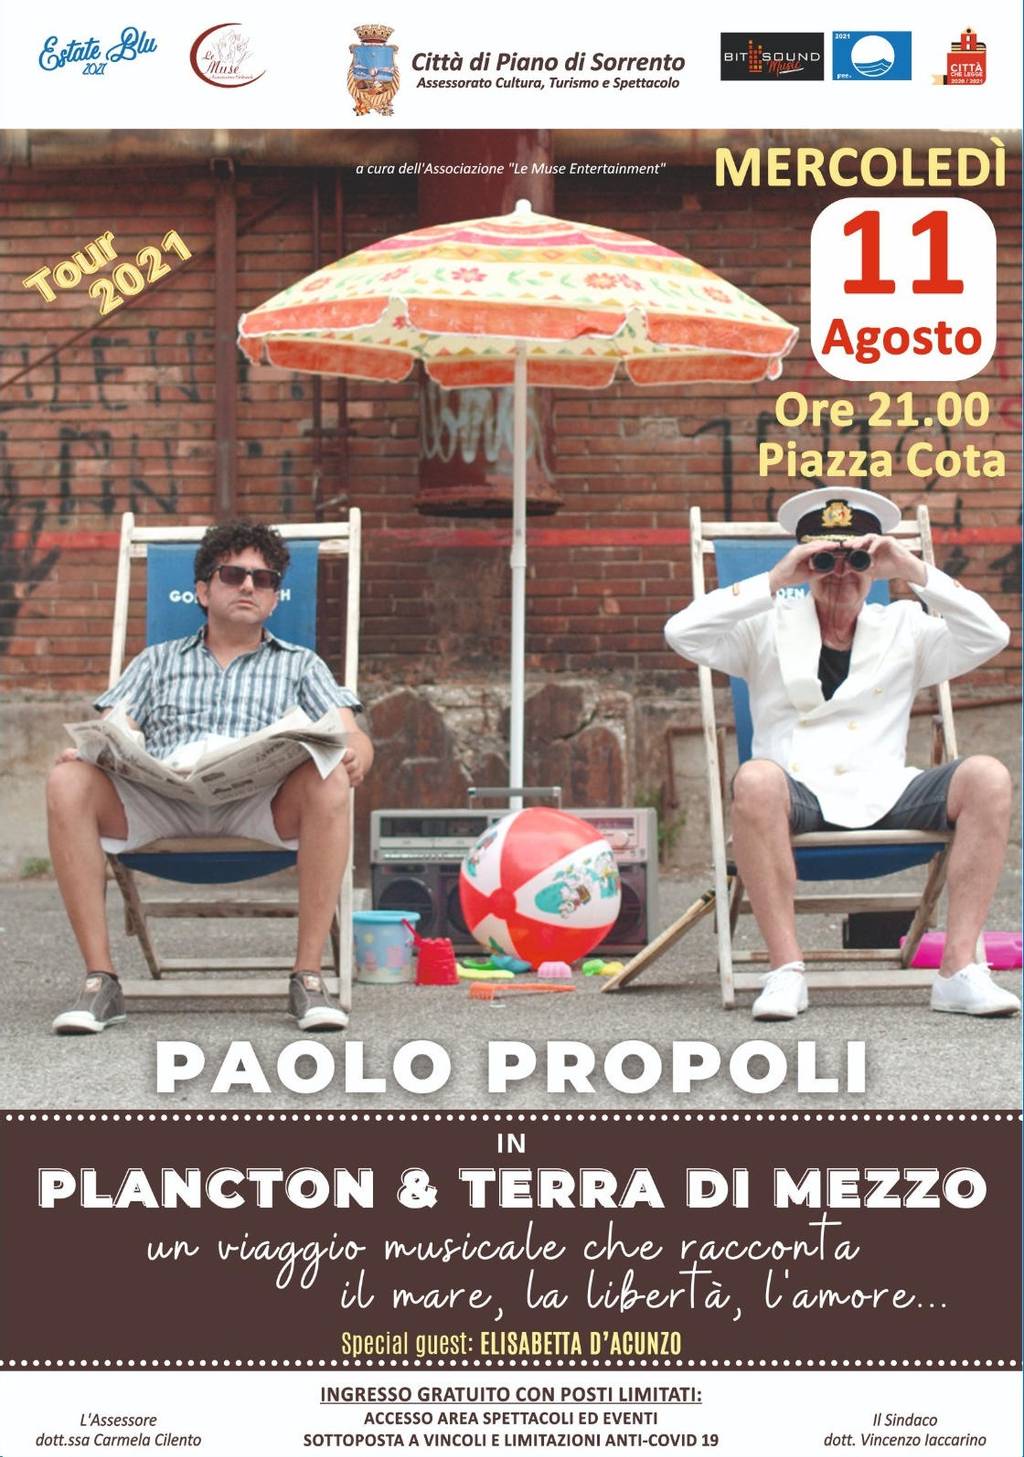 Paolo Propoli in "Plancton & Terra di mezzo"